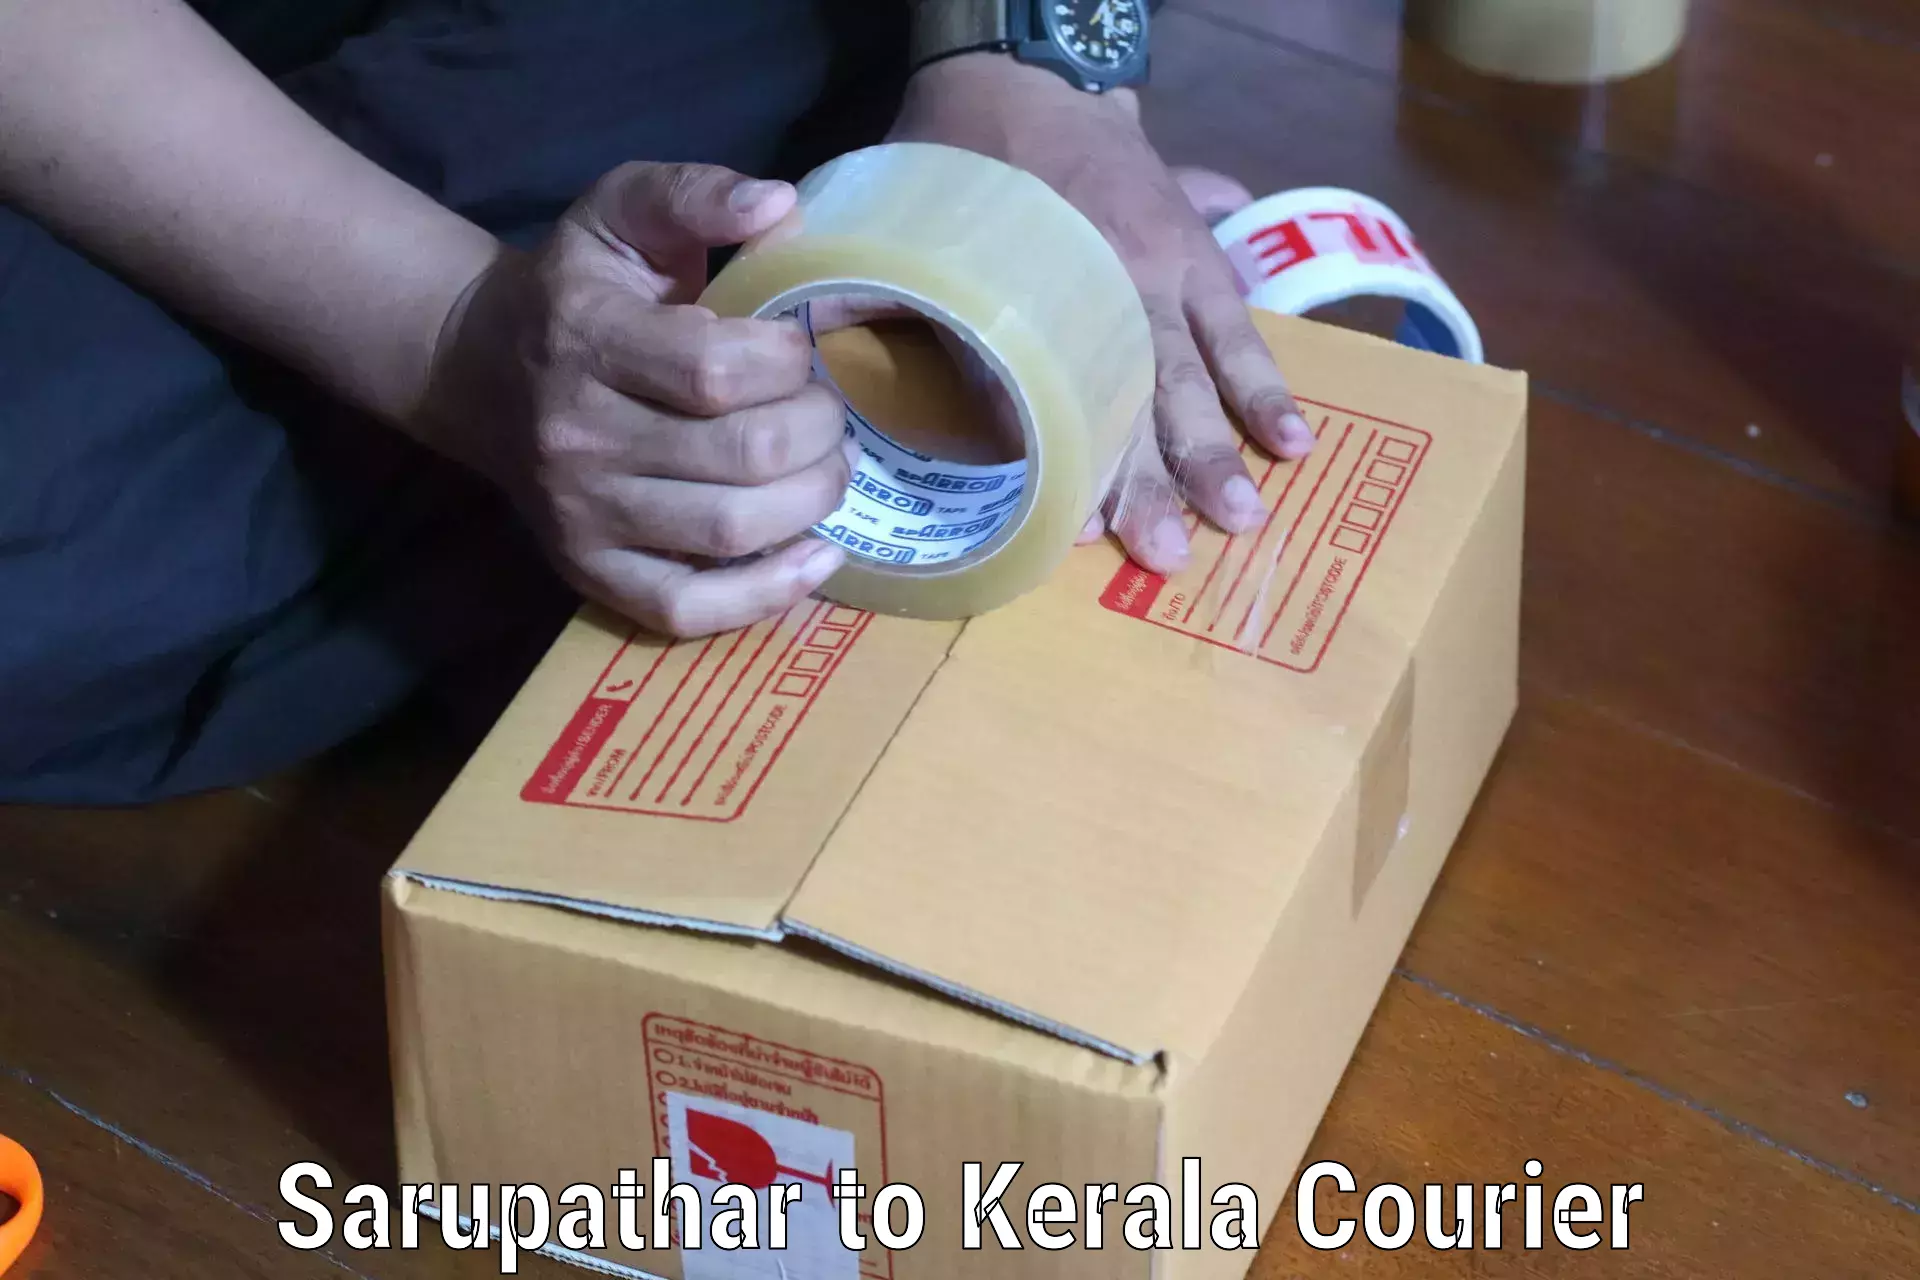 Local delivery service Sarupathar to Cochin Port Kochi